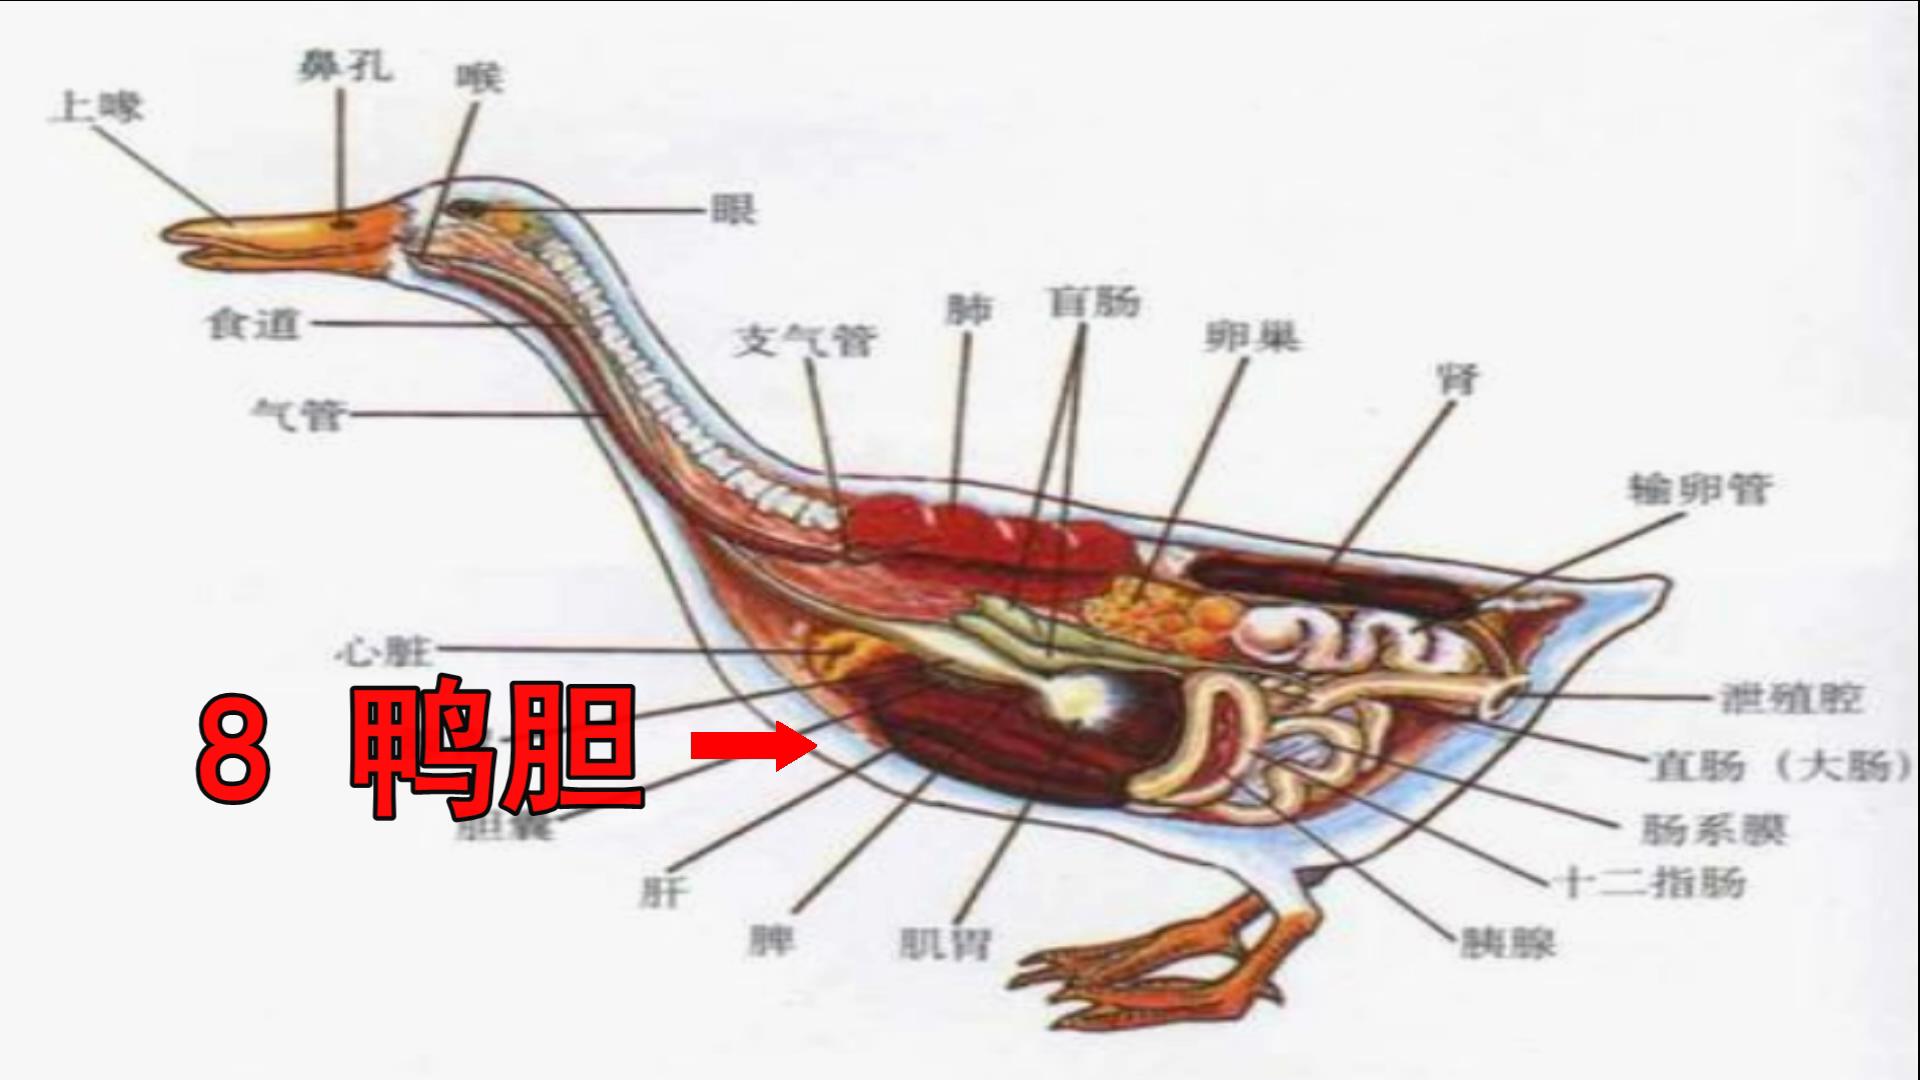 鸭子解剖图详细图-图库-五毛网